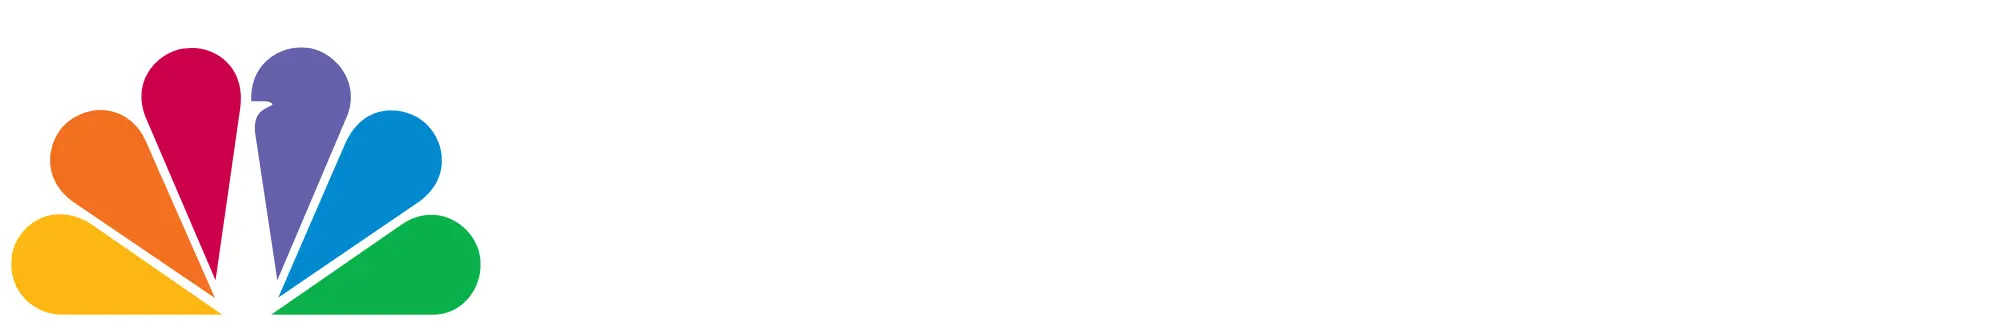 Logo for MSNBC